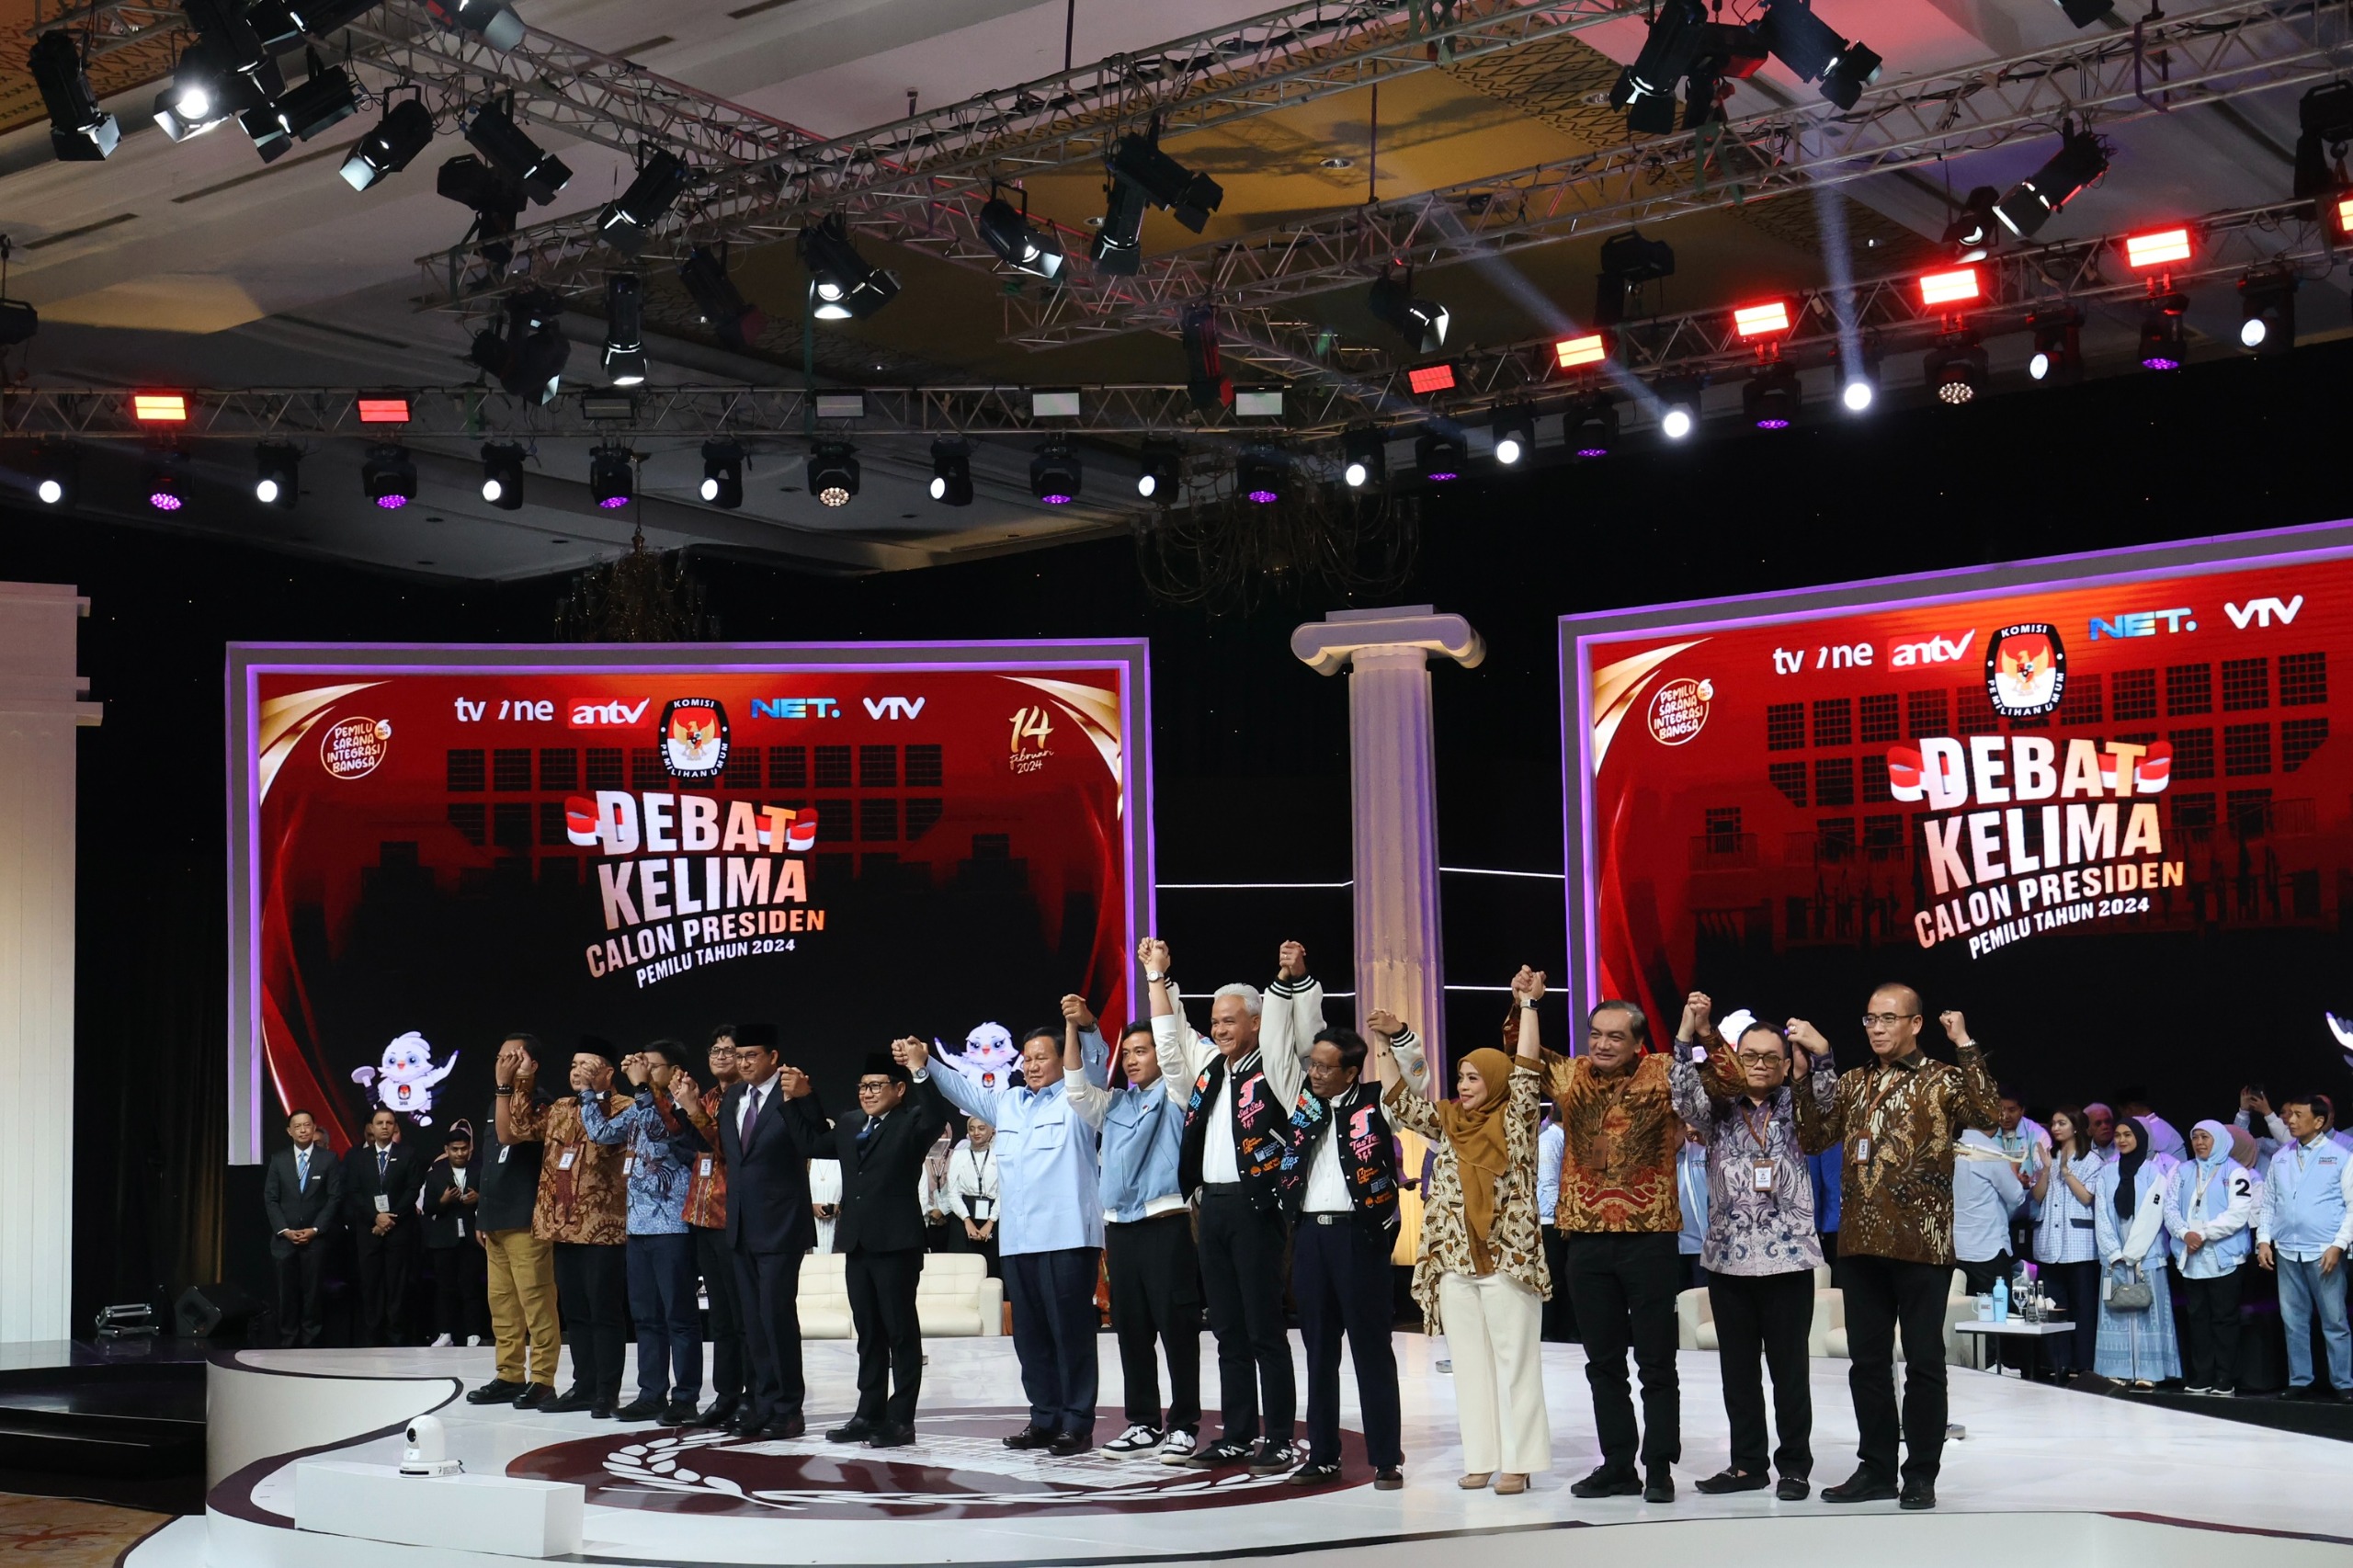 Pernyataan Pamungkas Debat, Prabowo Sampaikan Maaf kepada Paslon 1 dan 3